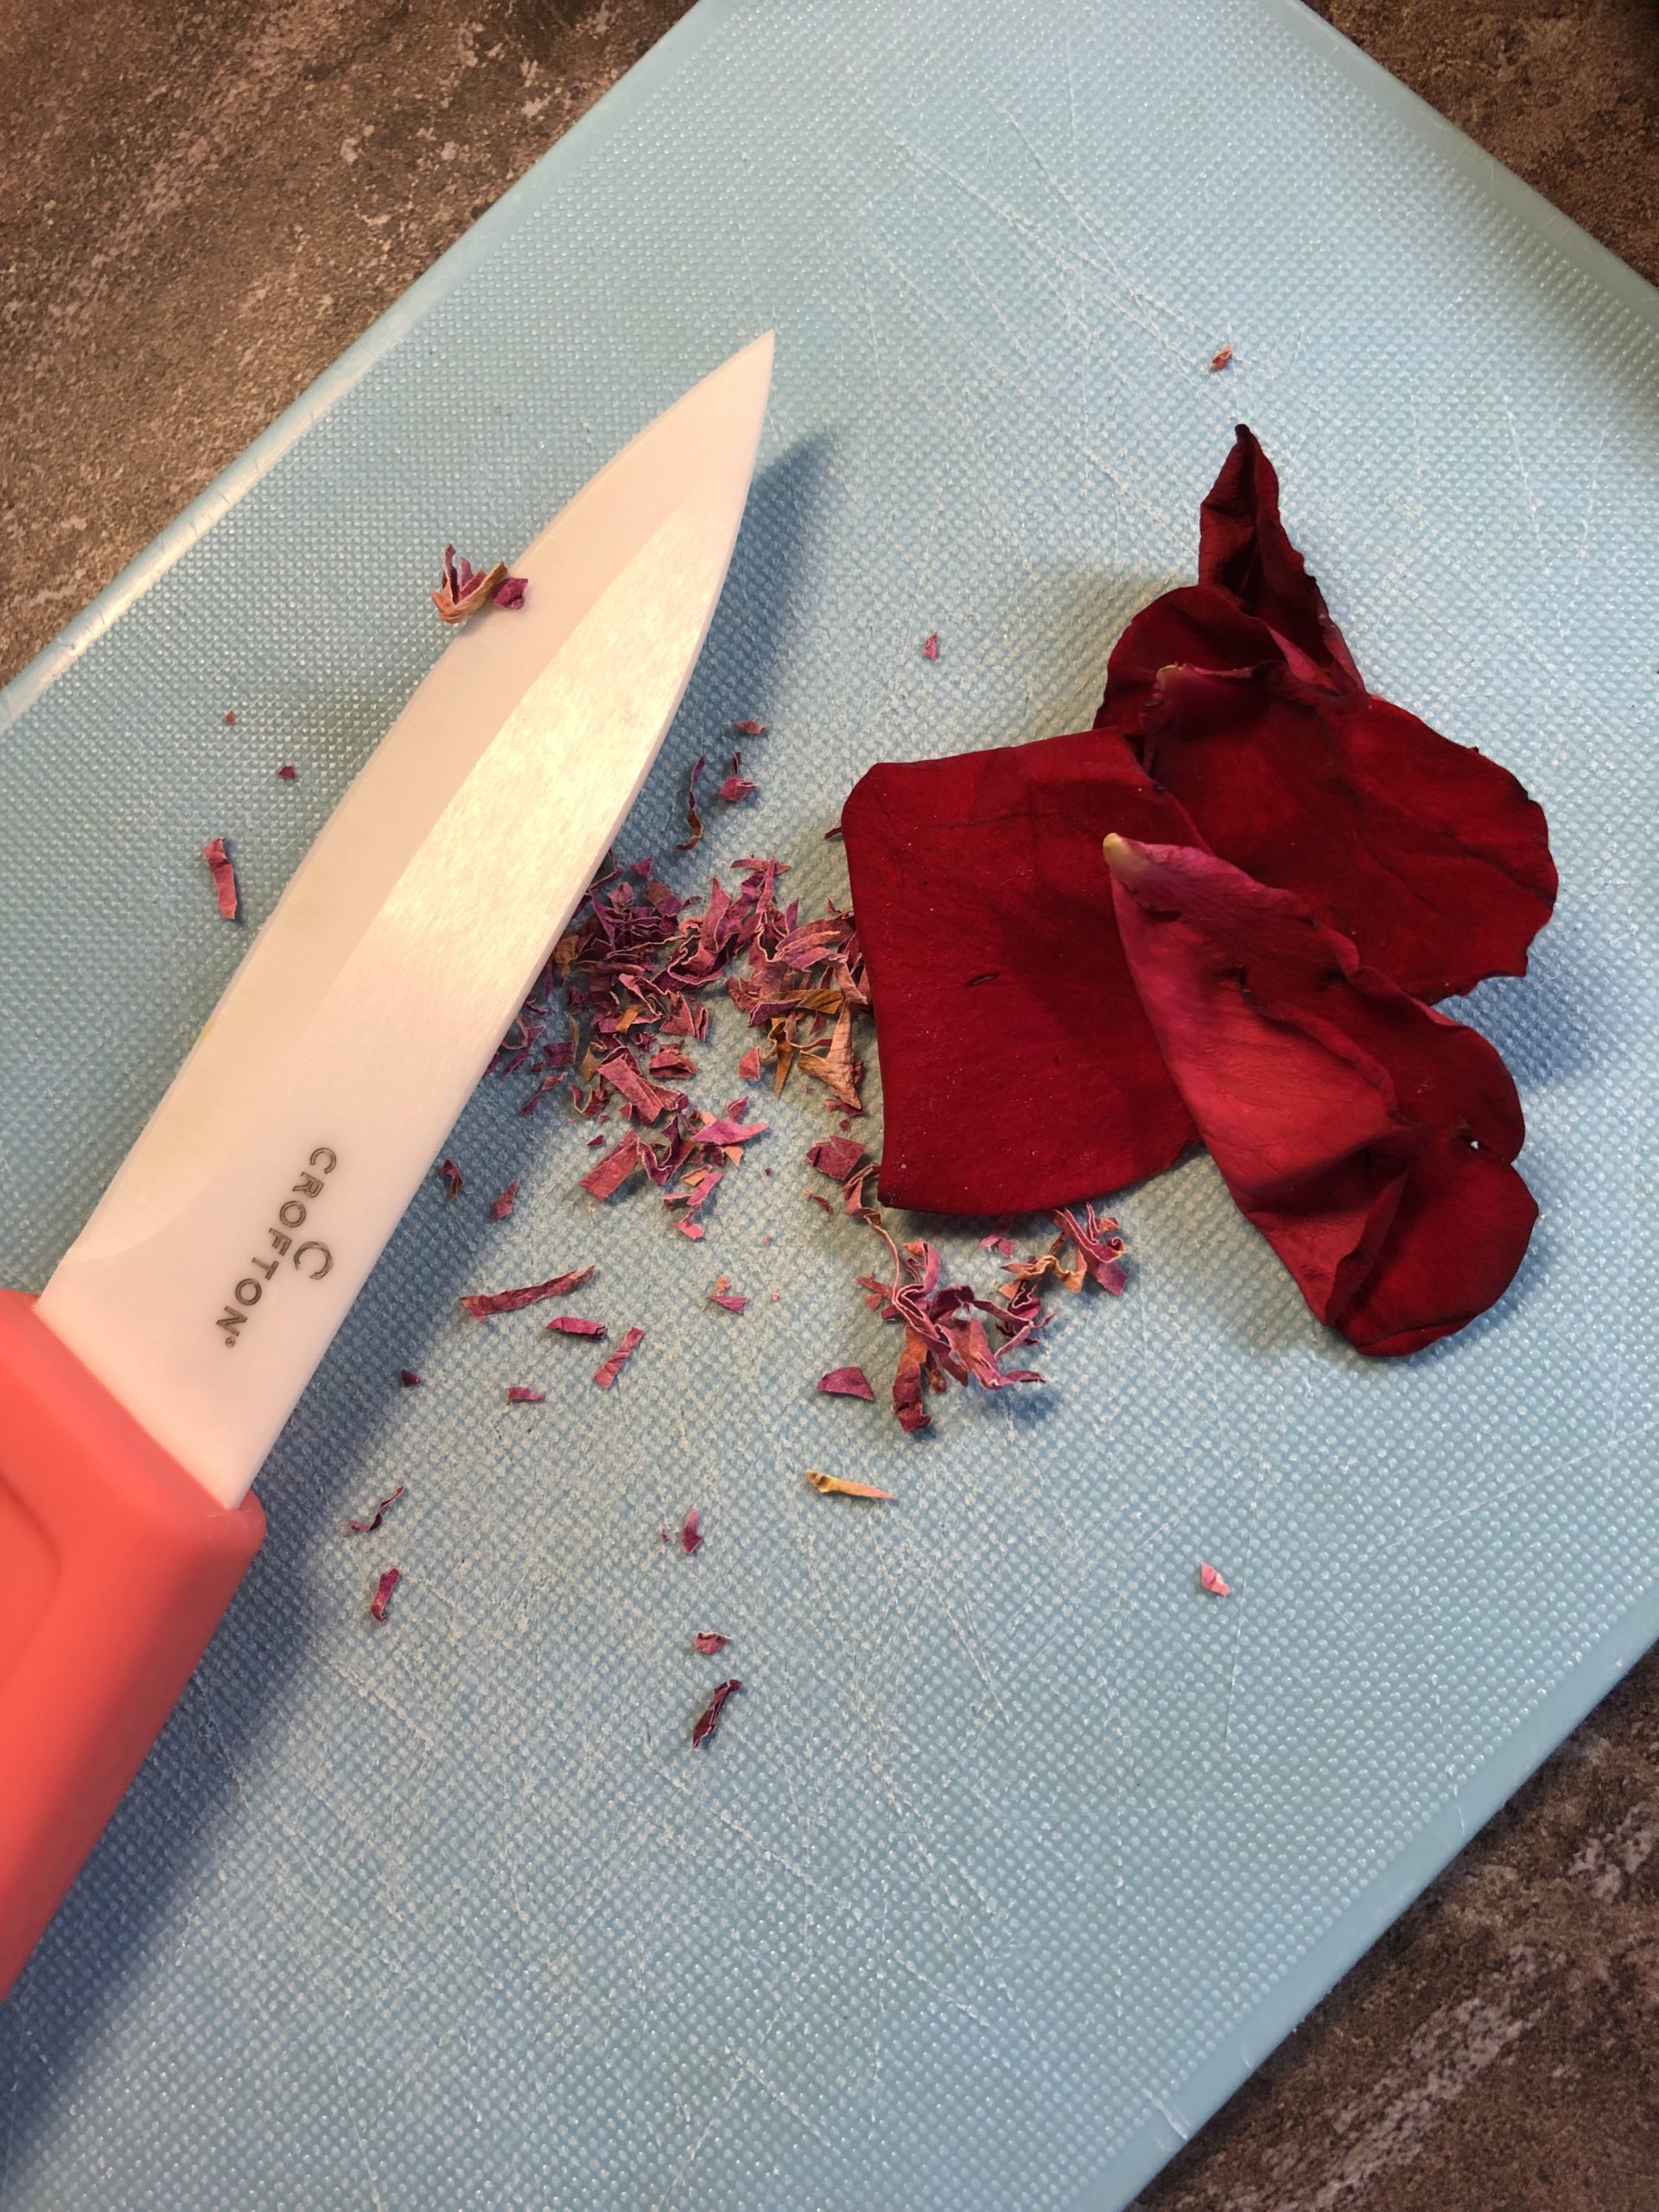 Bild zum Schritt 9 für die Kinder-Beschäftigung: '5-6 frische duftende Rosenblätter mit dem Messer klein schneiden. Ihr...'